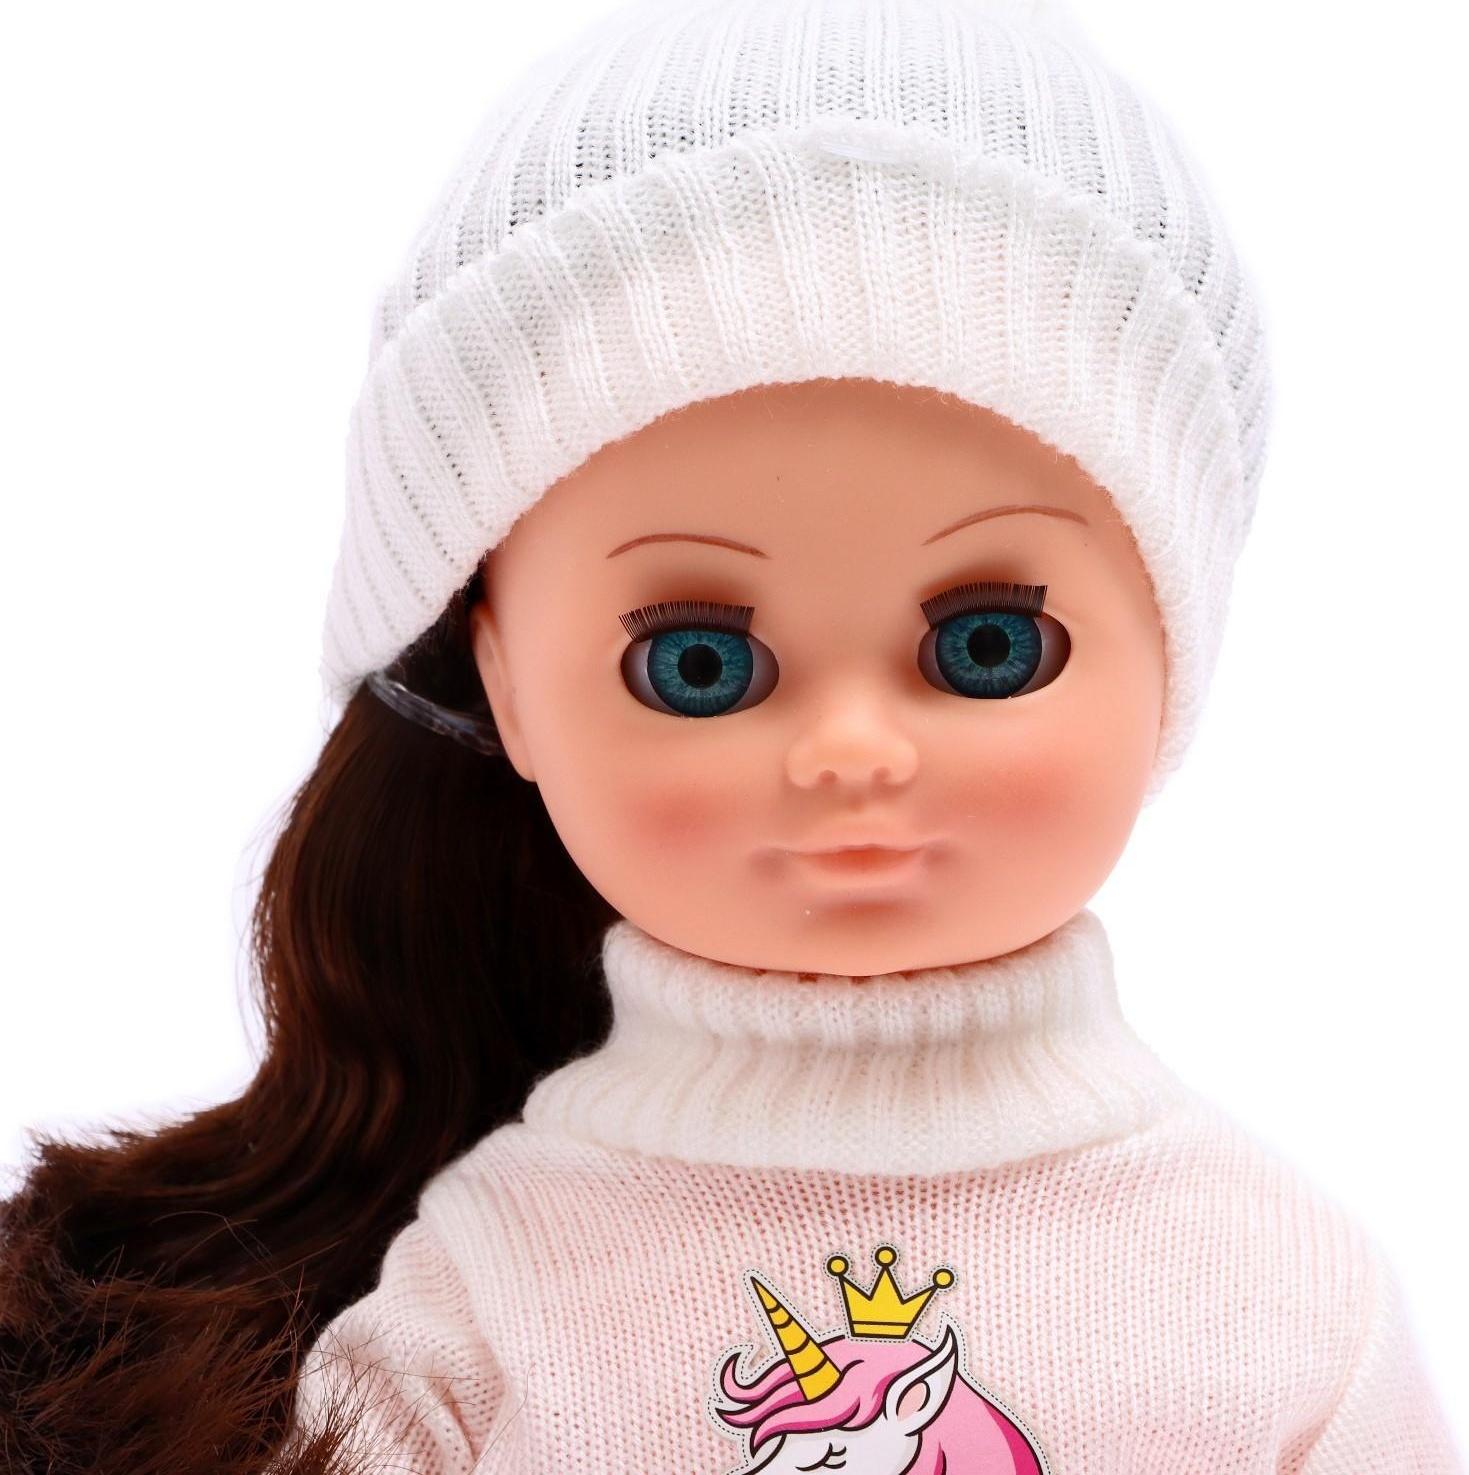 Кукла «Герда зимнее утро» со звуковым устройством, 38 см